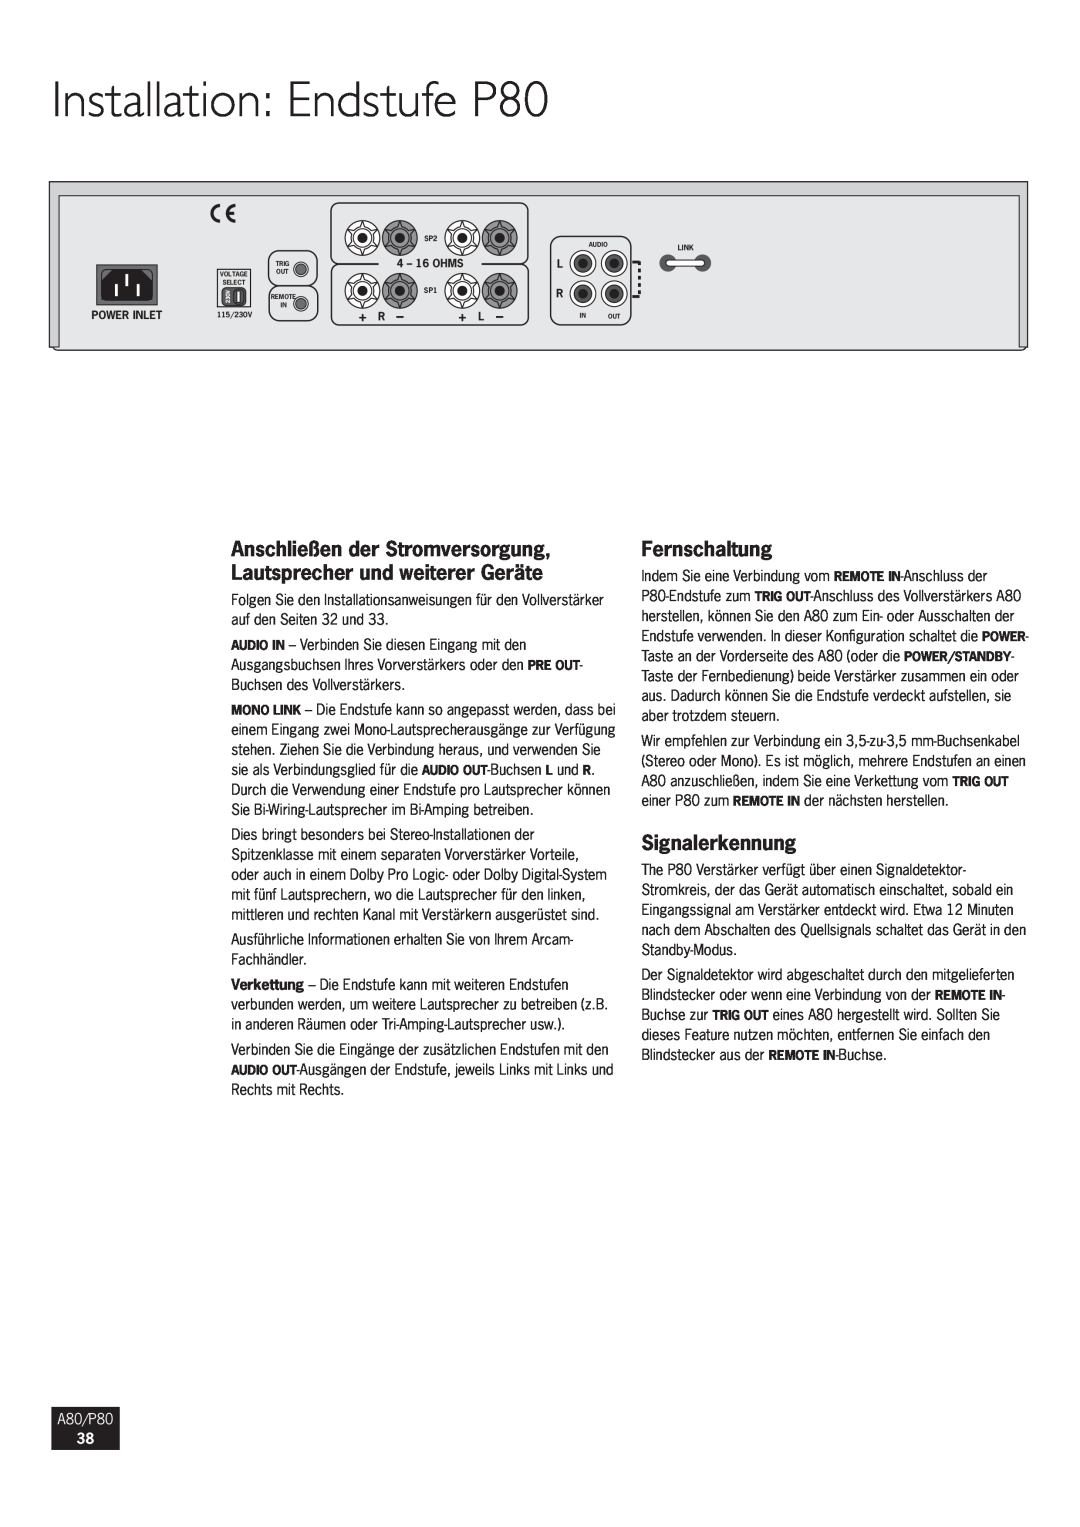 Arcam manual Installation Endstufe P80, Fernschaltung, Signalerkennung, + R, + L, A80/P80 